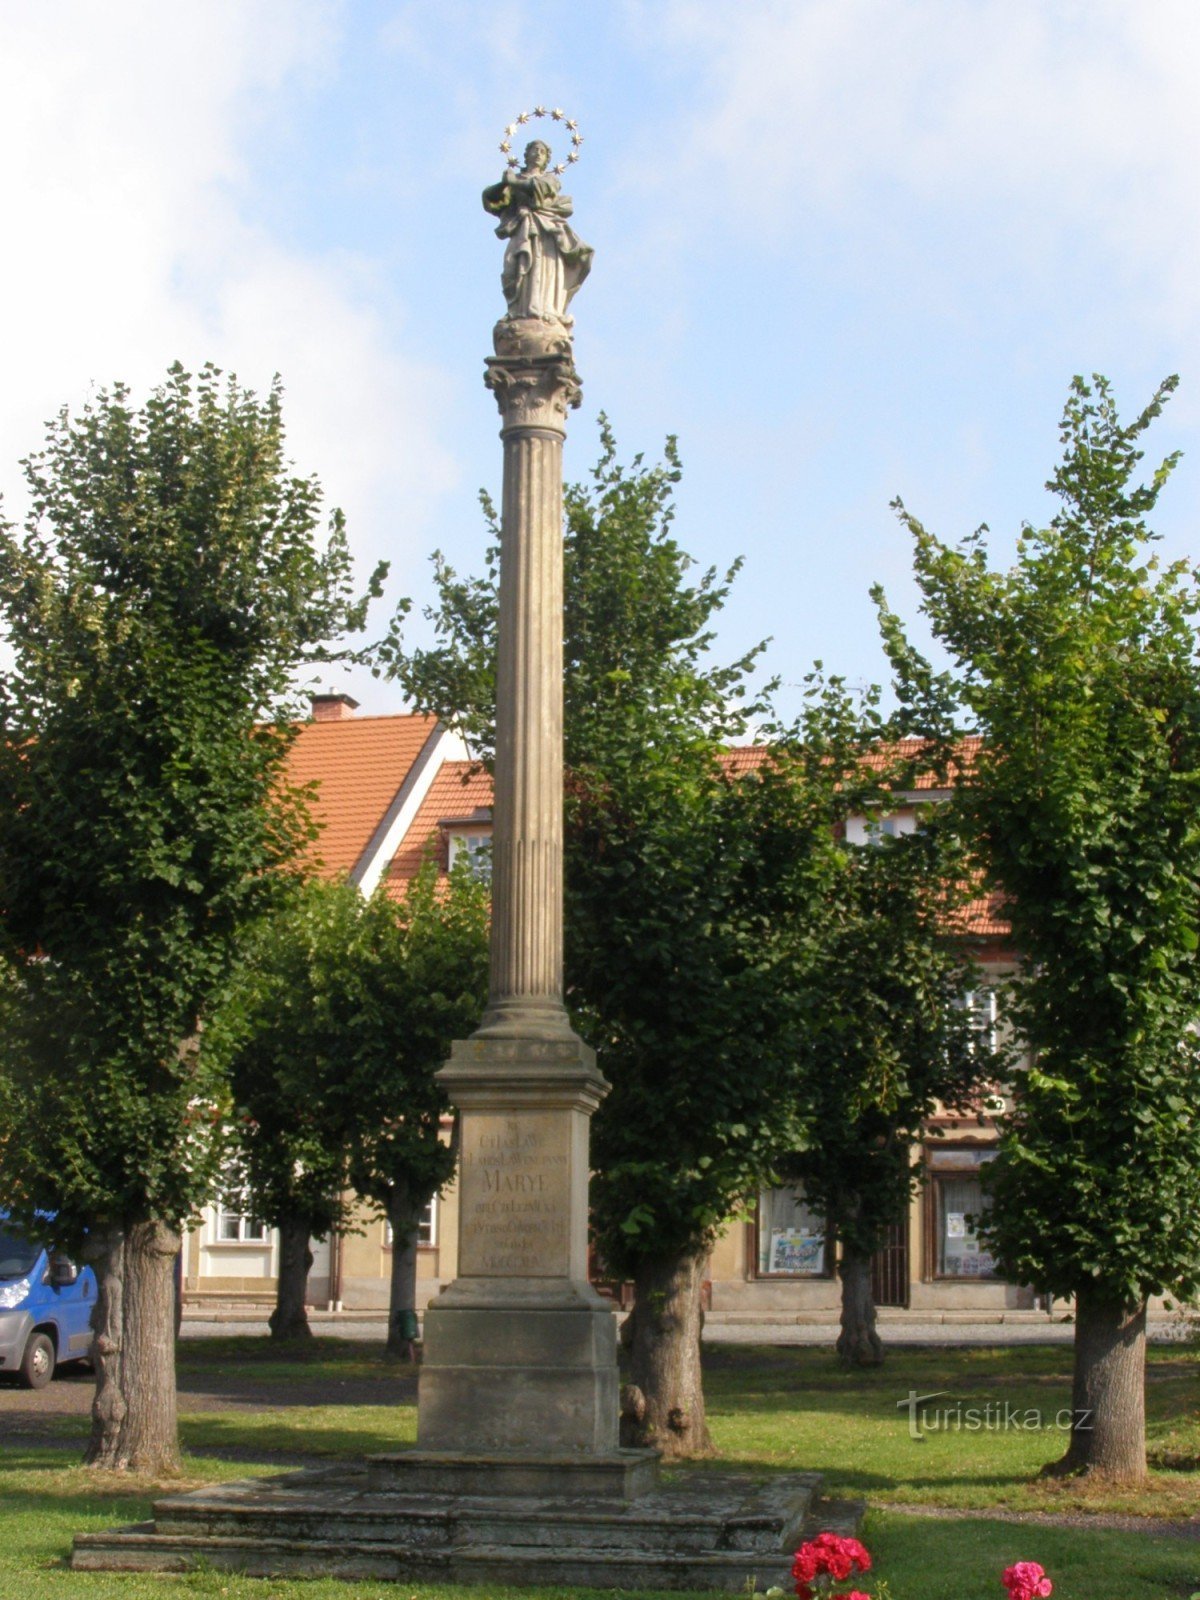 Đường sắt - náměstí Svobody, bộ tượng đài